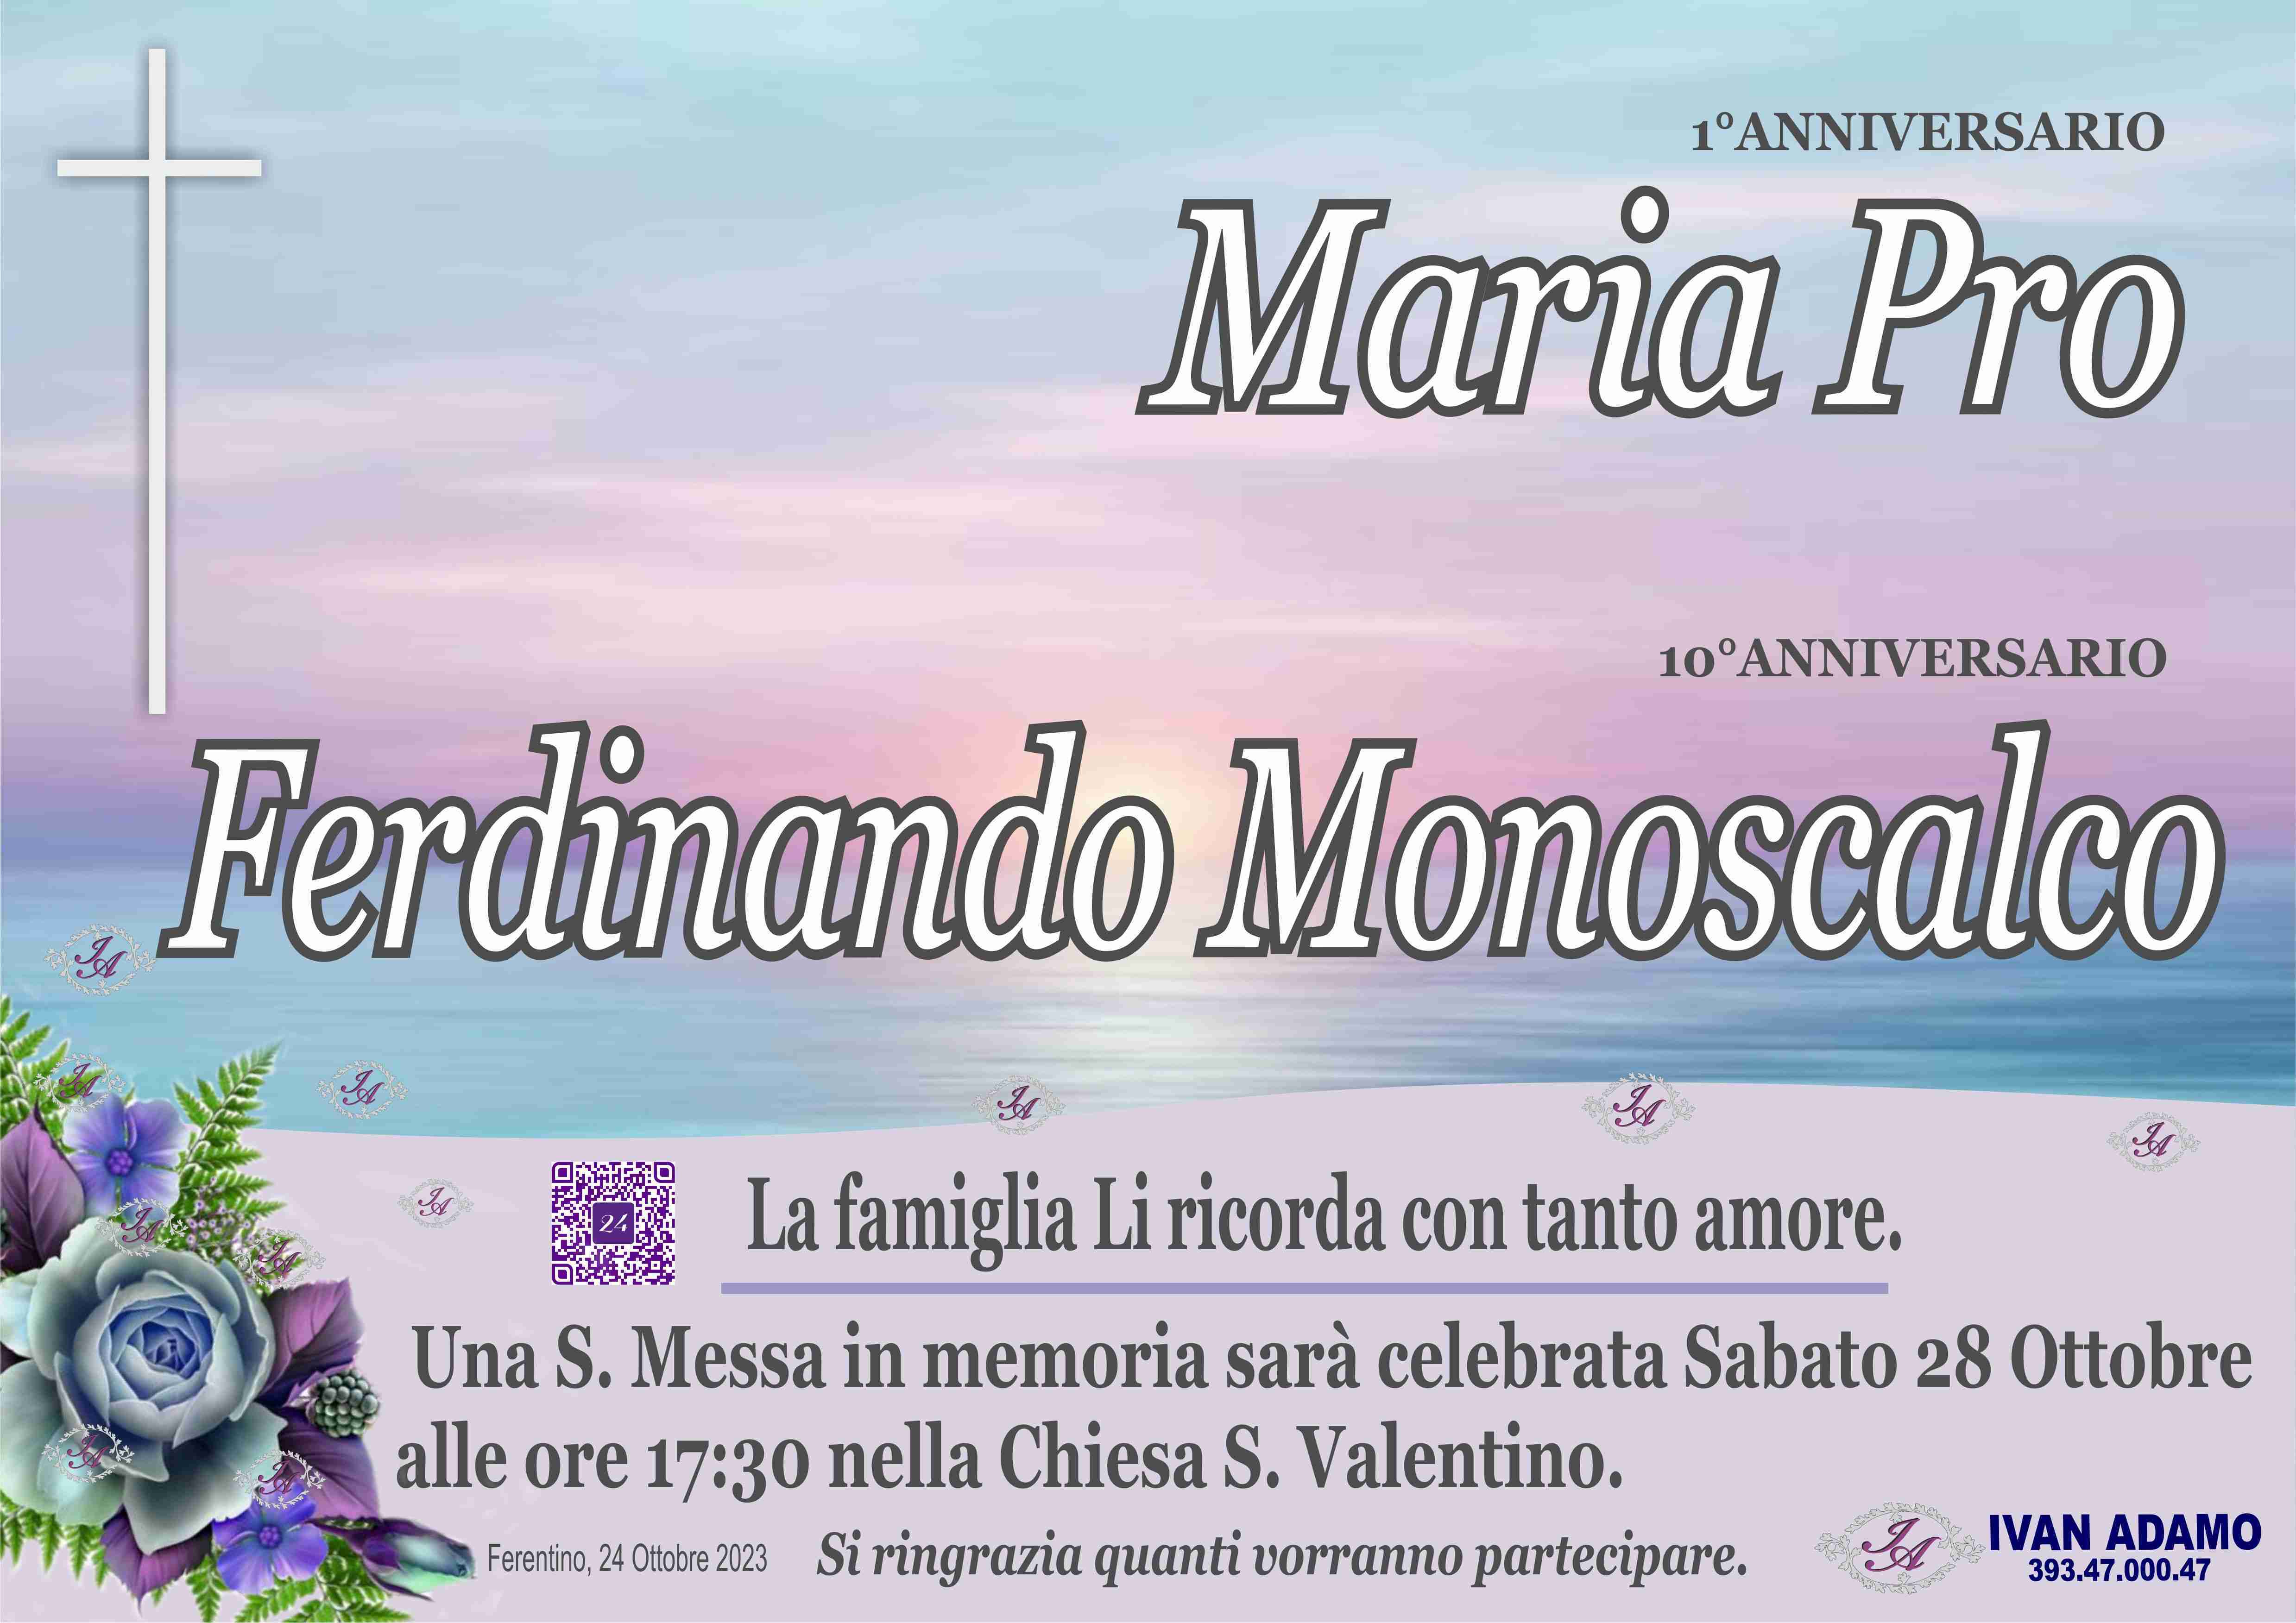 Maria Pro e Ferdinando Monoscalco